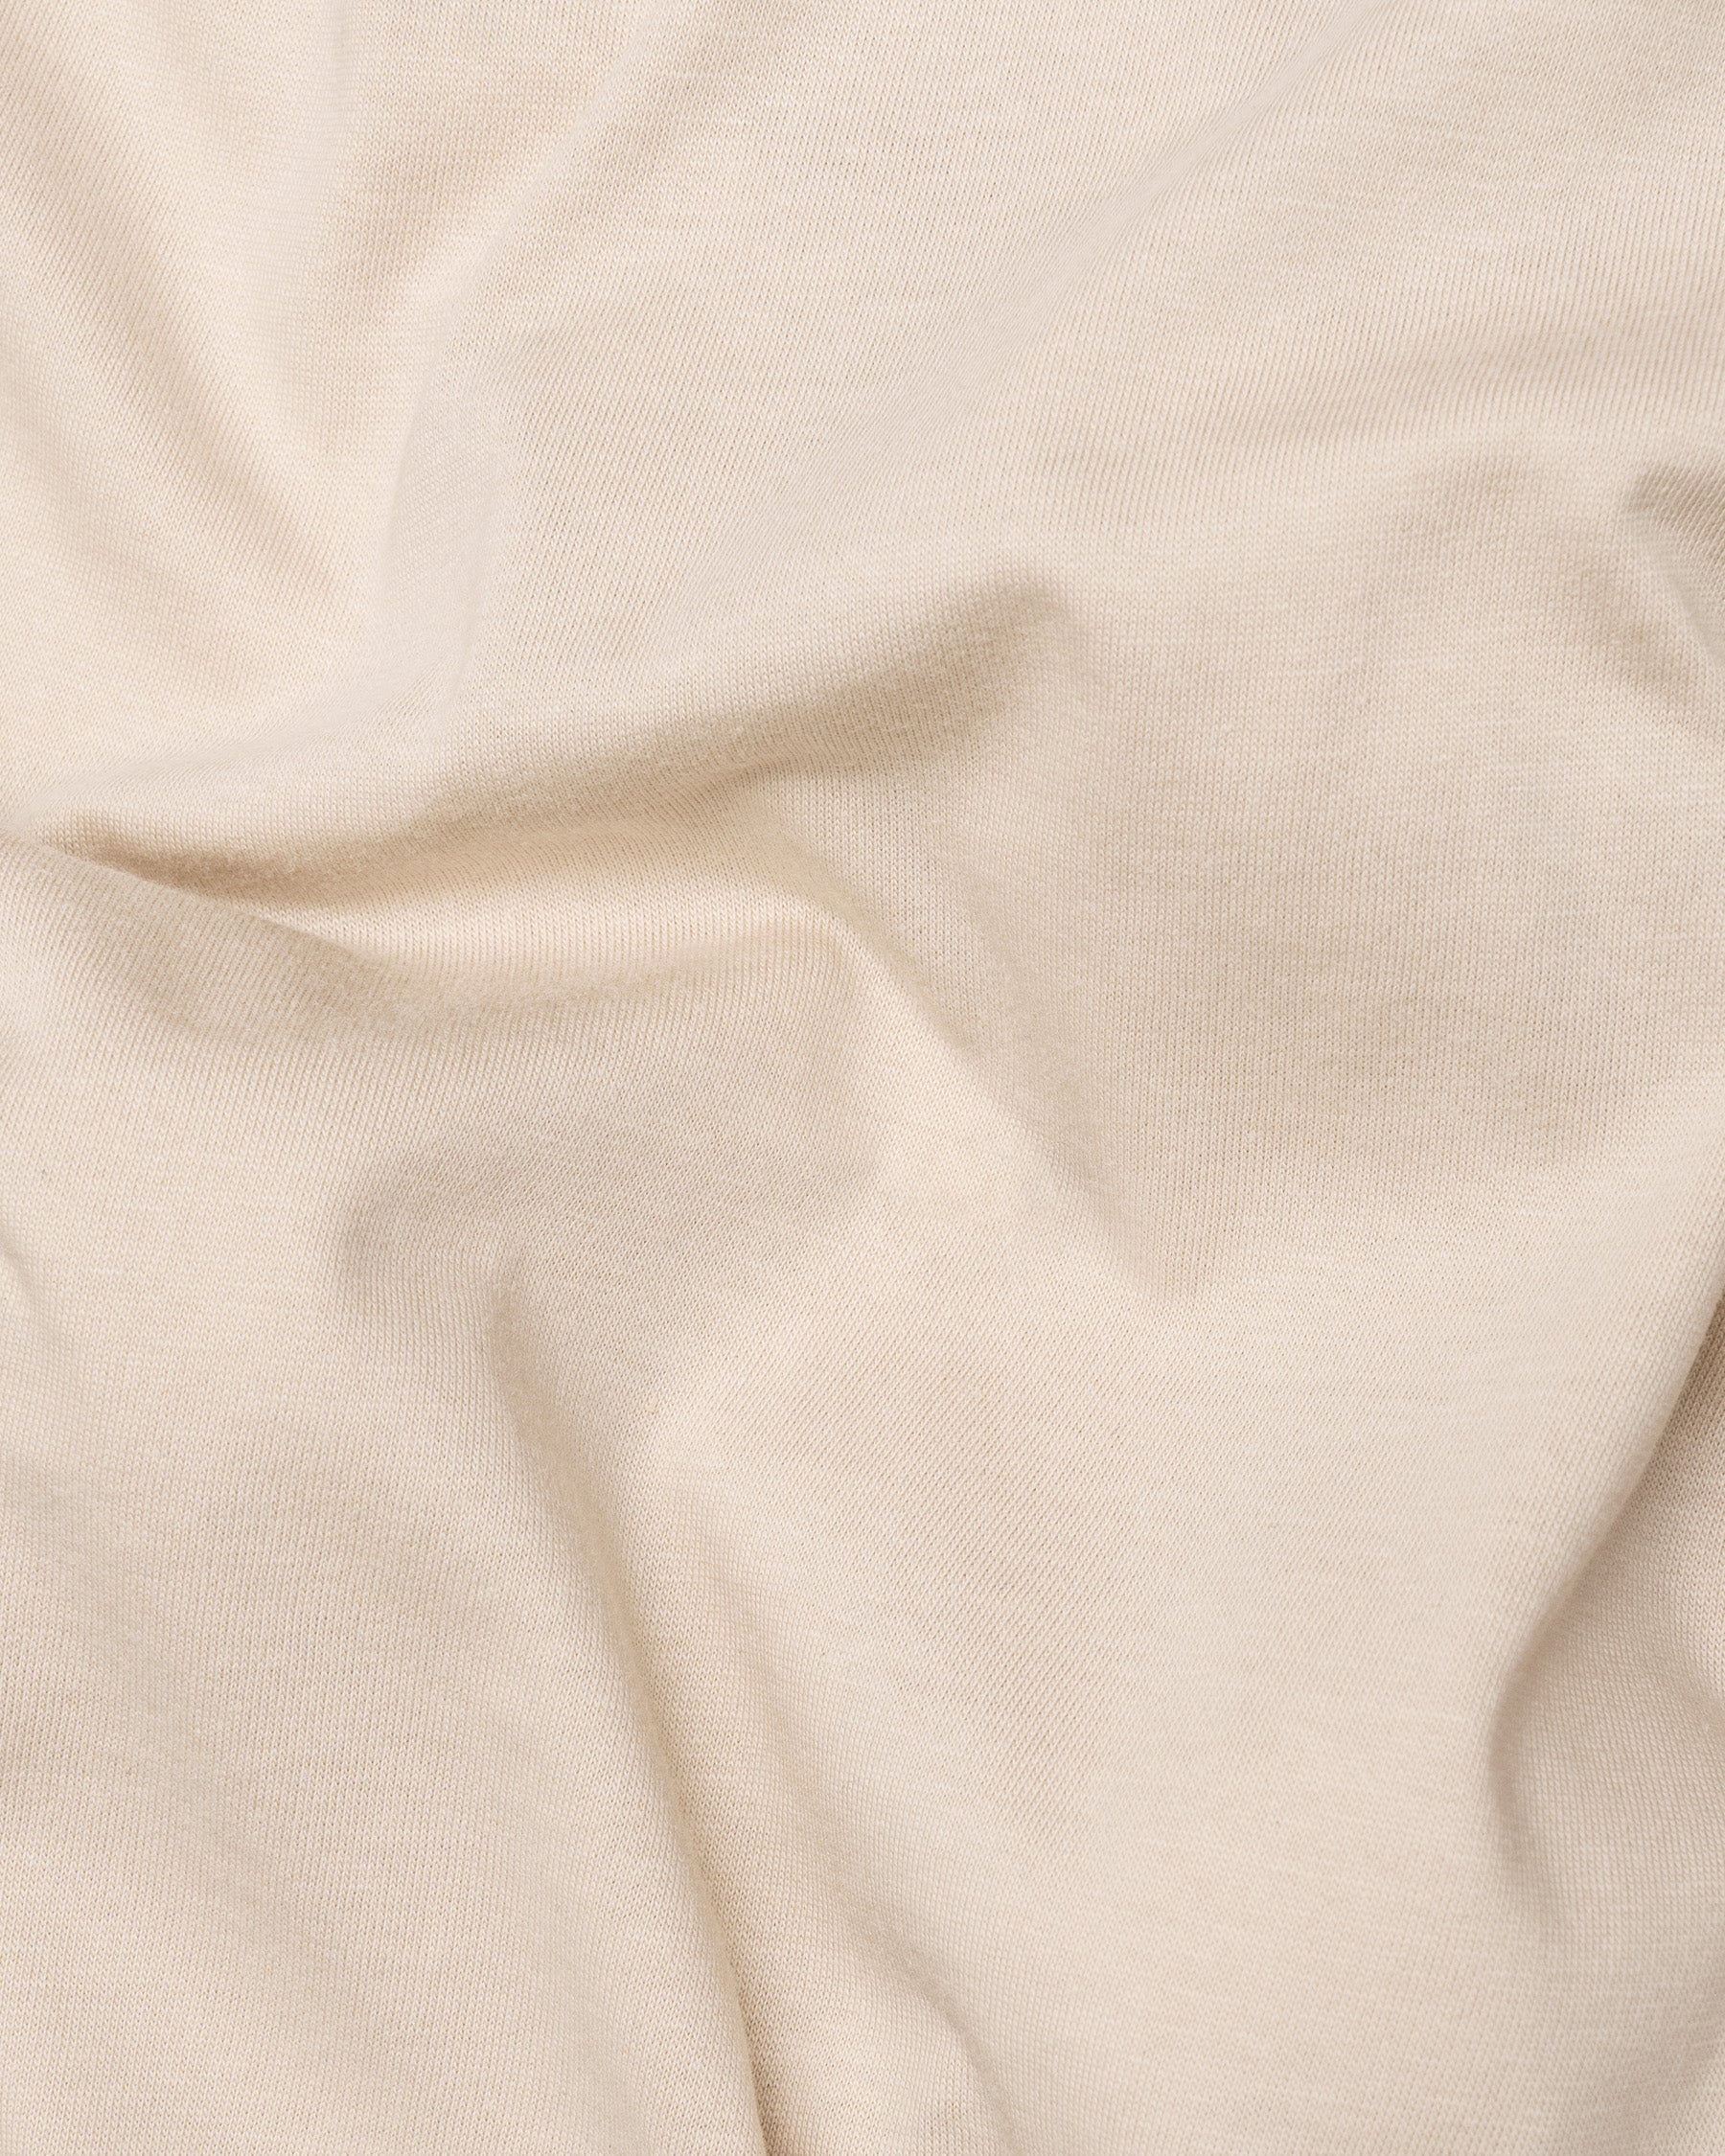 Merino Cream Full-Sleeve Super Soft Organic Cotton T-Shirt